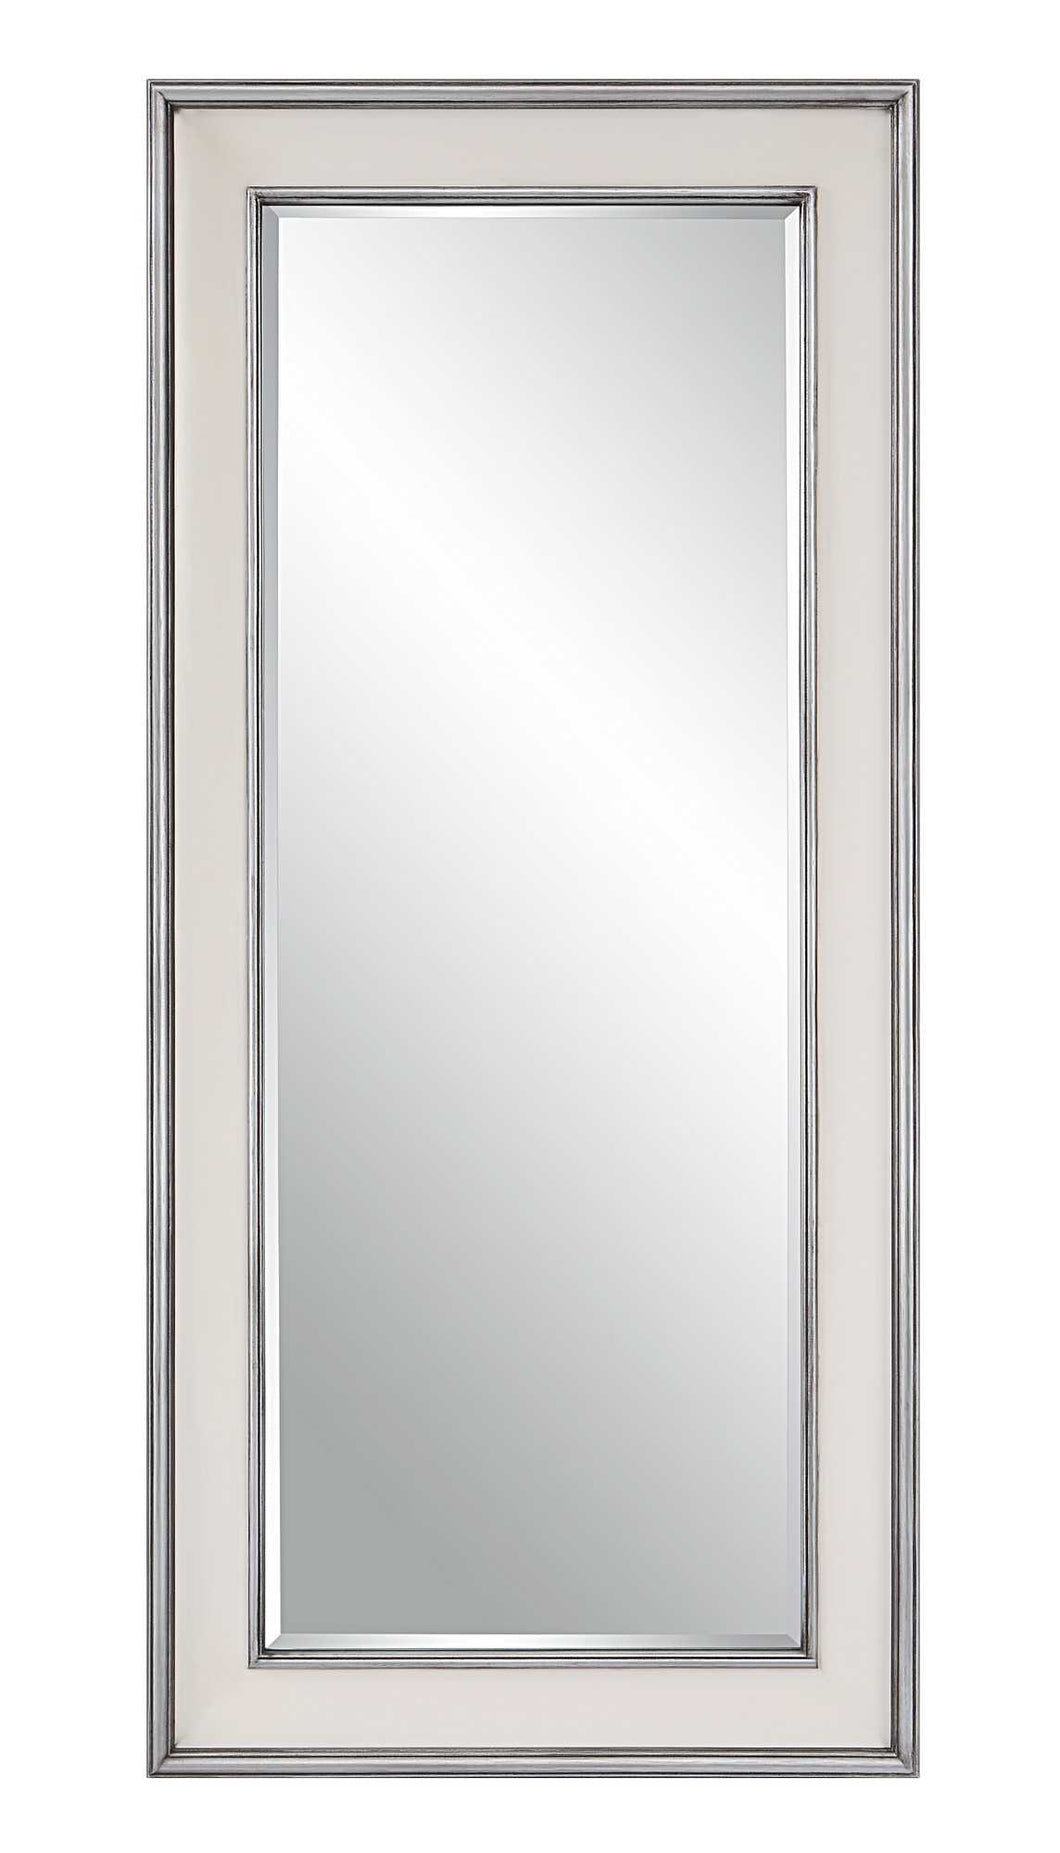 Metallic Trim Leaner Mirror 32